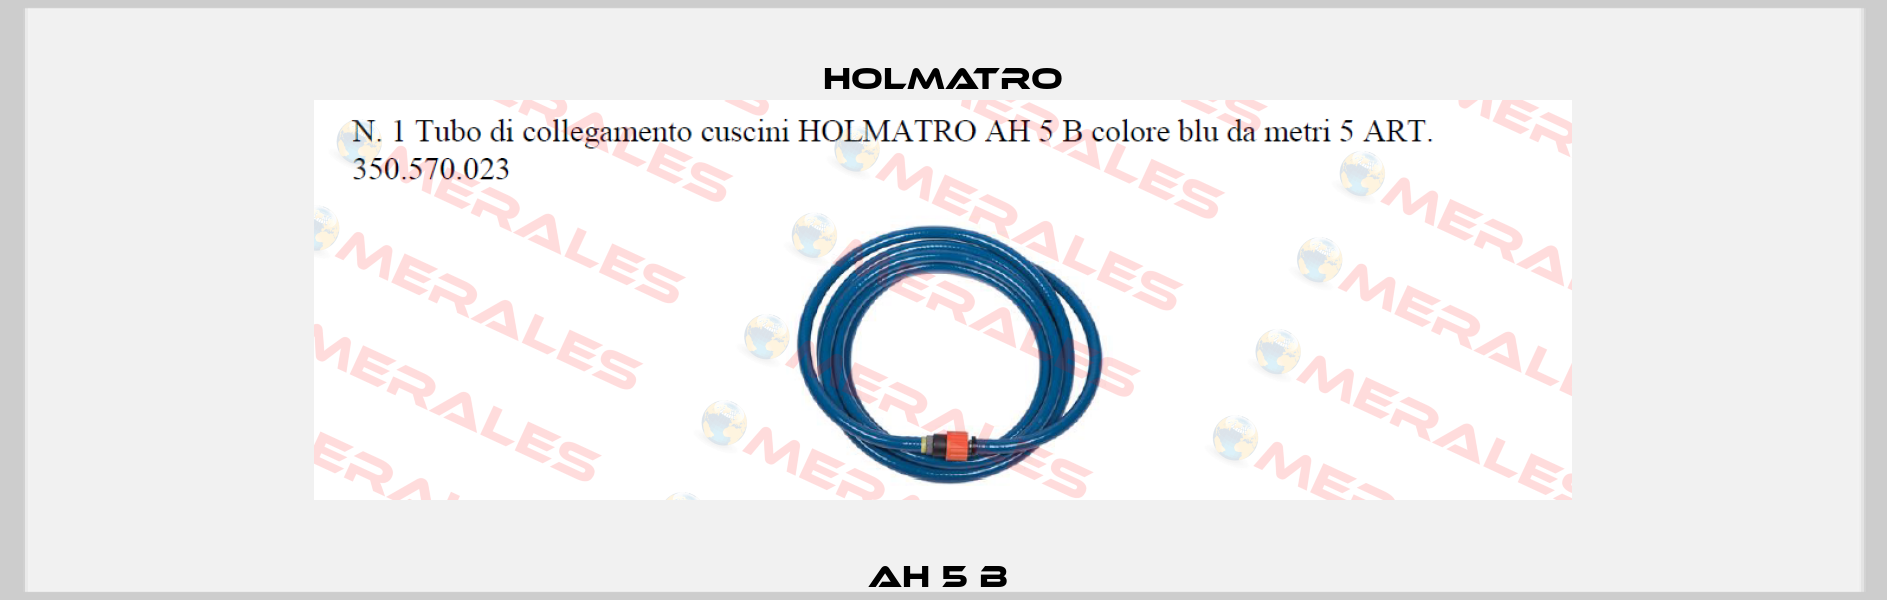 AH 5 B  Holmatro